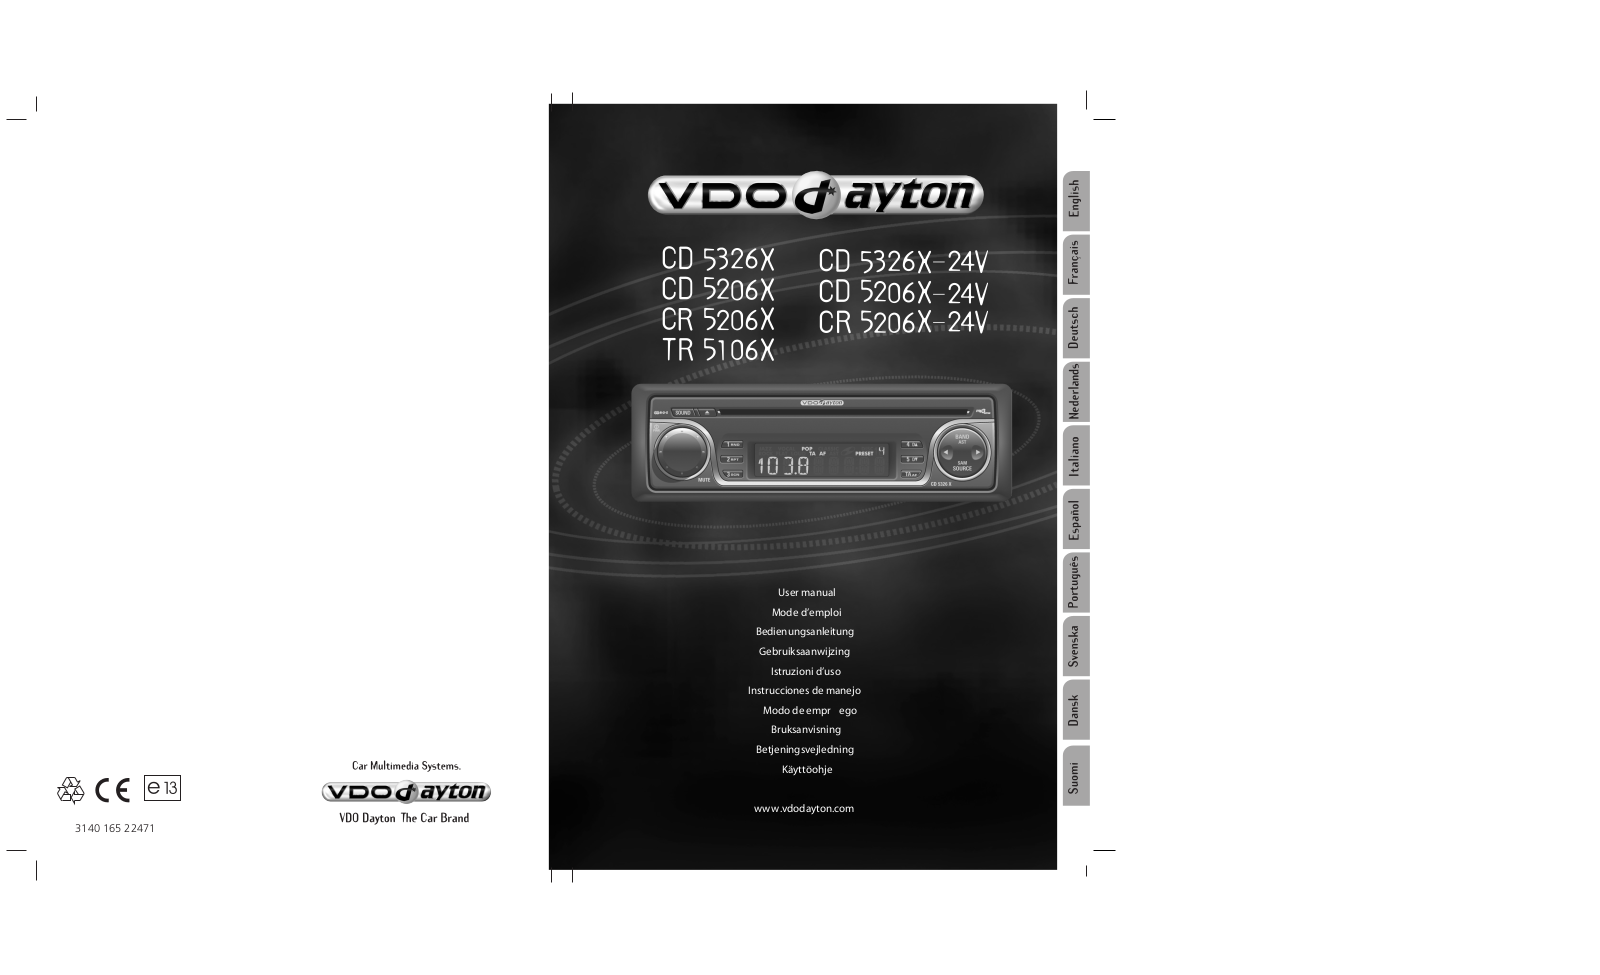 VDO DAYTON CD 5206 X, CD 5326 X, CR 5206 X, TR 5106 X User Manual